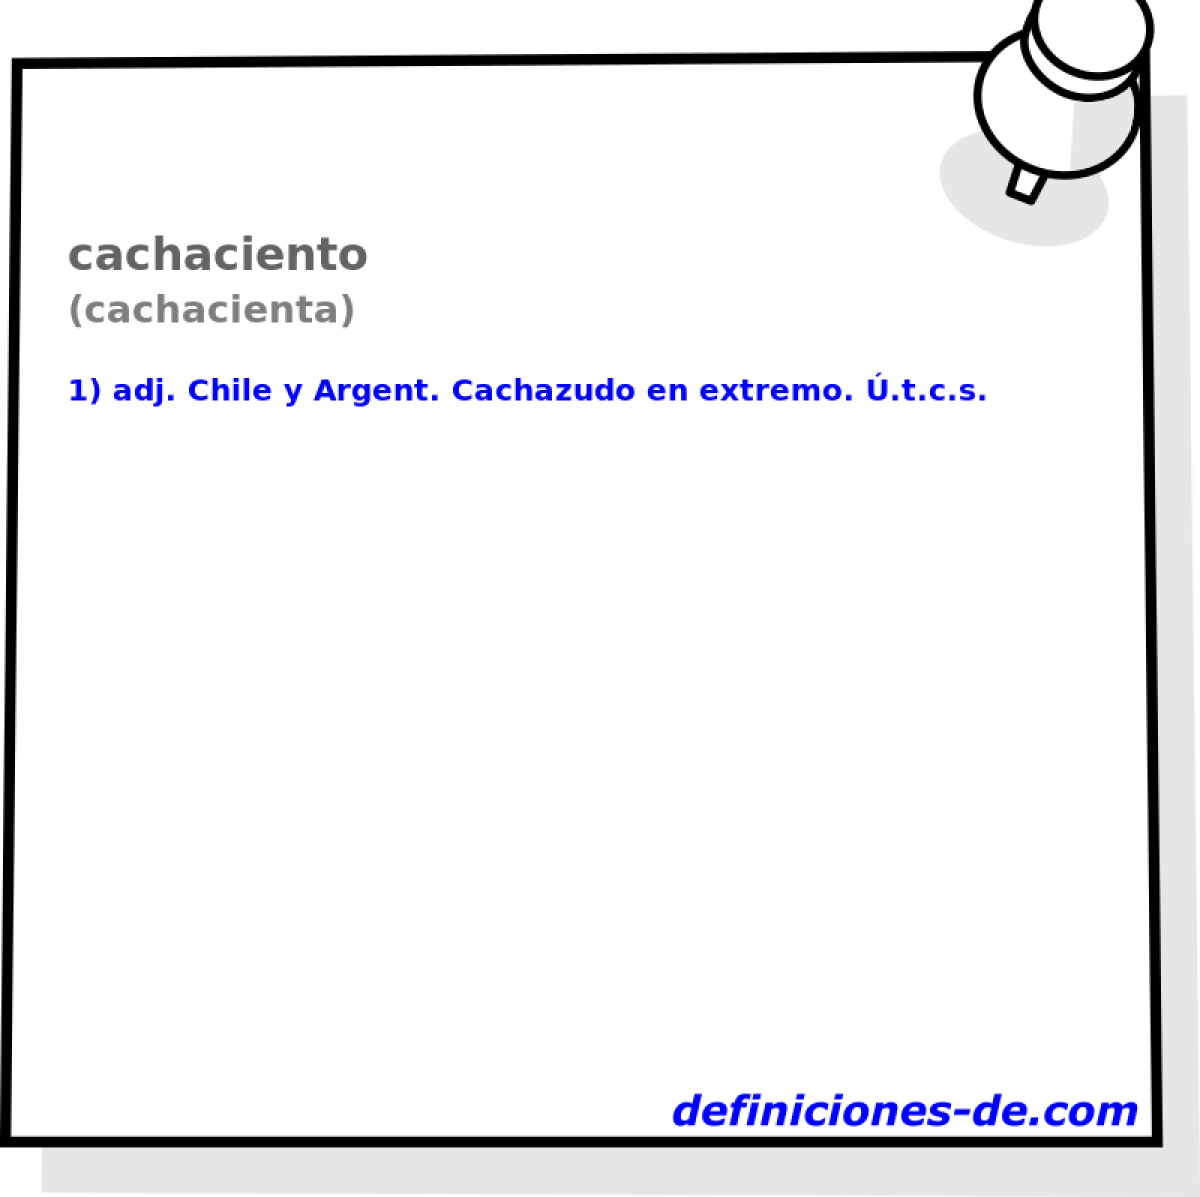 cachaciento (cachacienta)